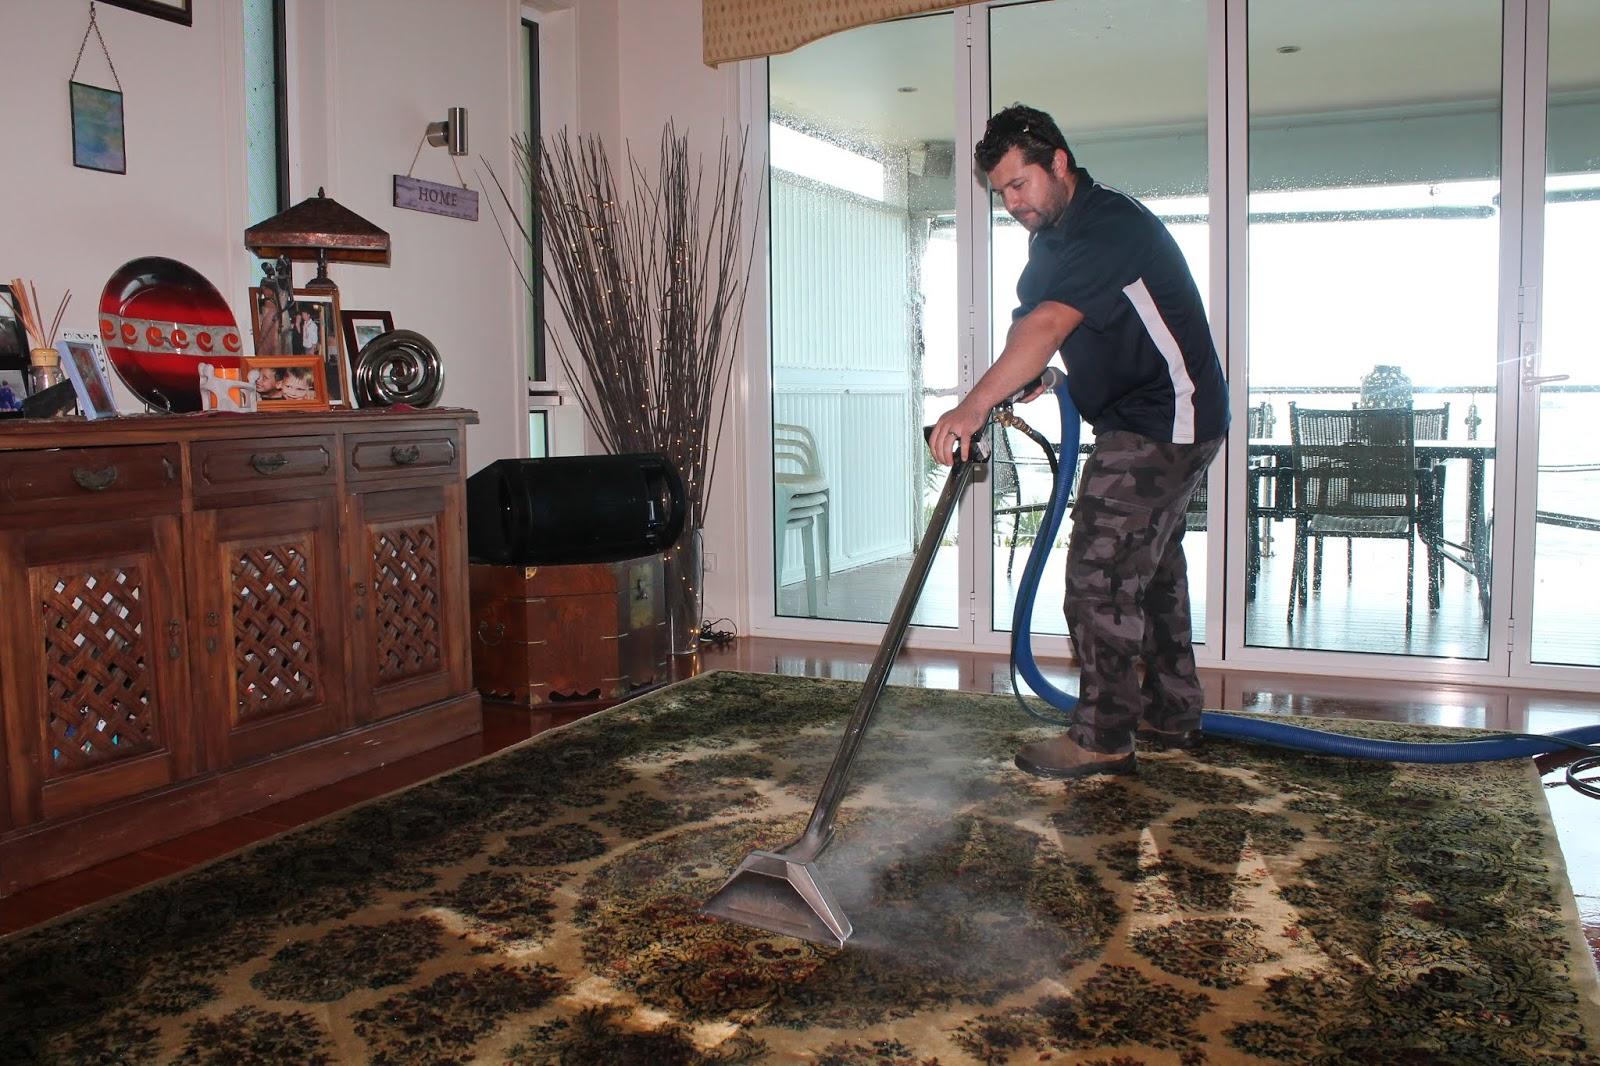 clean carpet